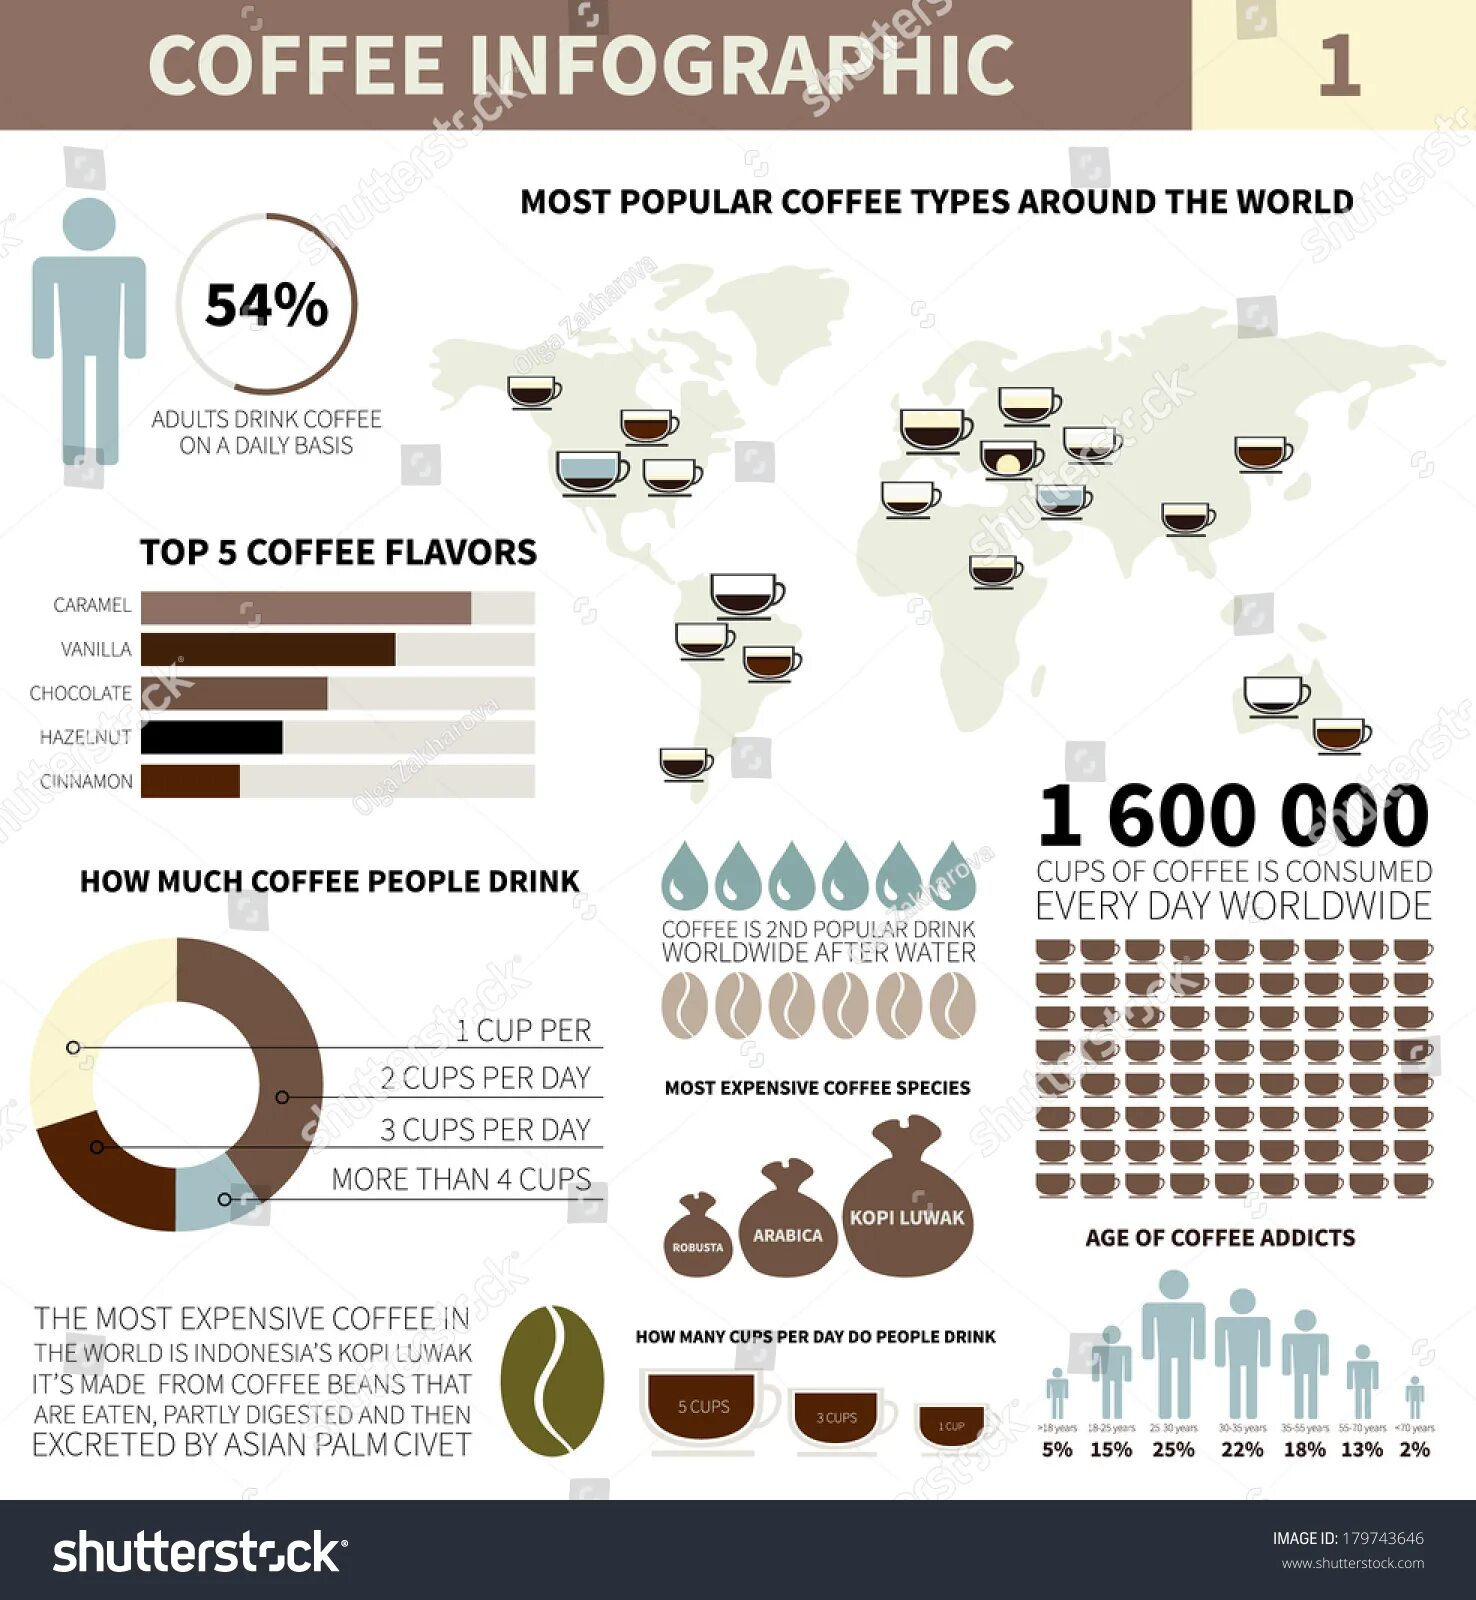 Сколько людей пьет кофе. Инфографика кофе. Статистика кофе. Статистика потребления кофе. Инфографика потребления кофе.